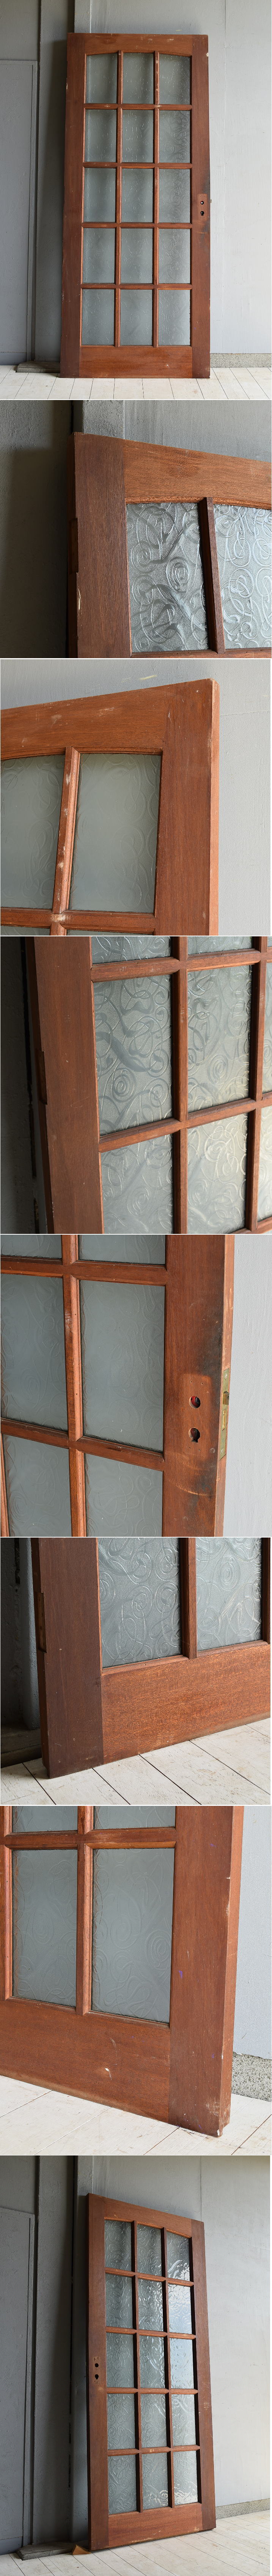 イギリス アンティーク ガラス入り木製ドア 扉 建具 7097